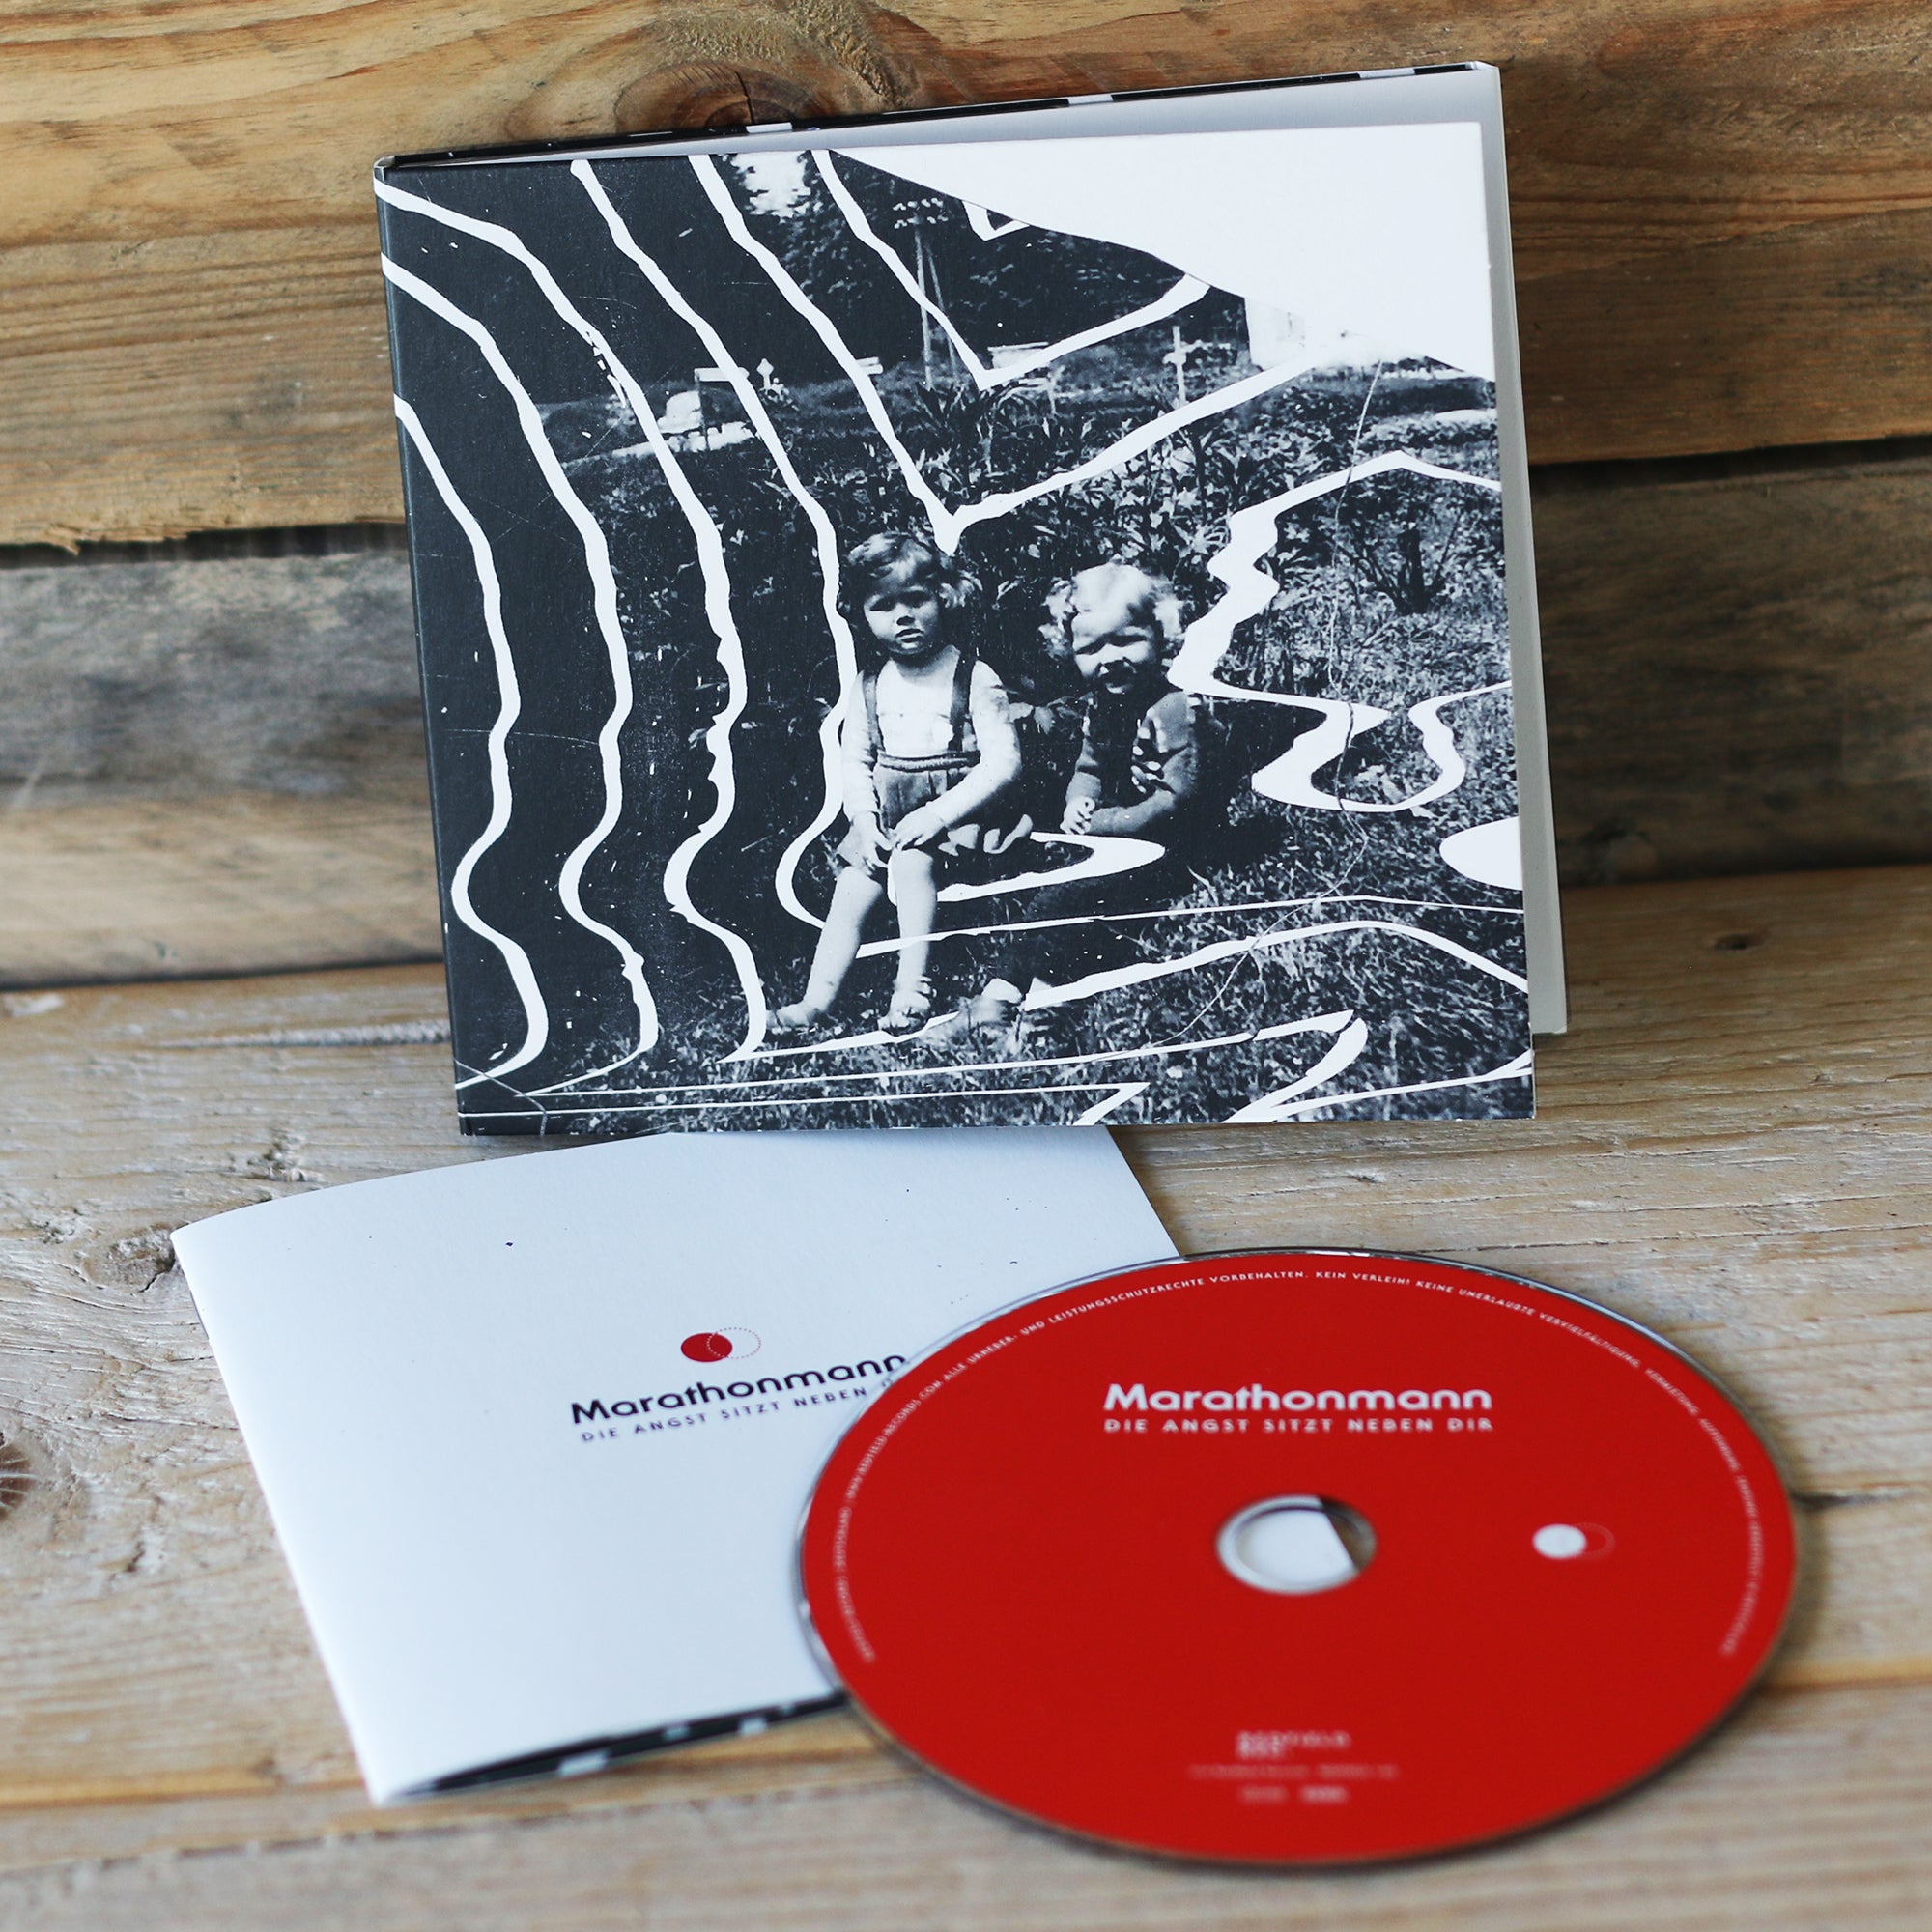 Marathonmann - Die Angst sitzt neben dir - CD (2019) - Redfield Records